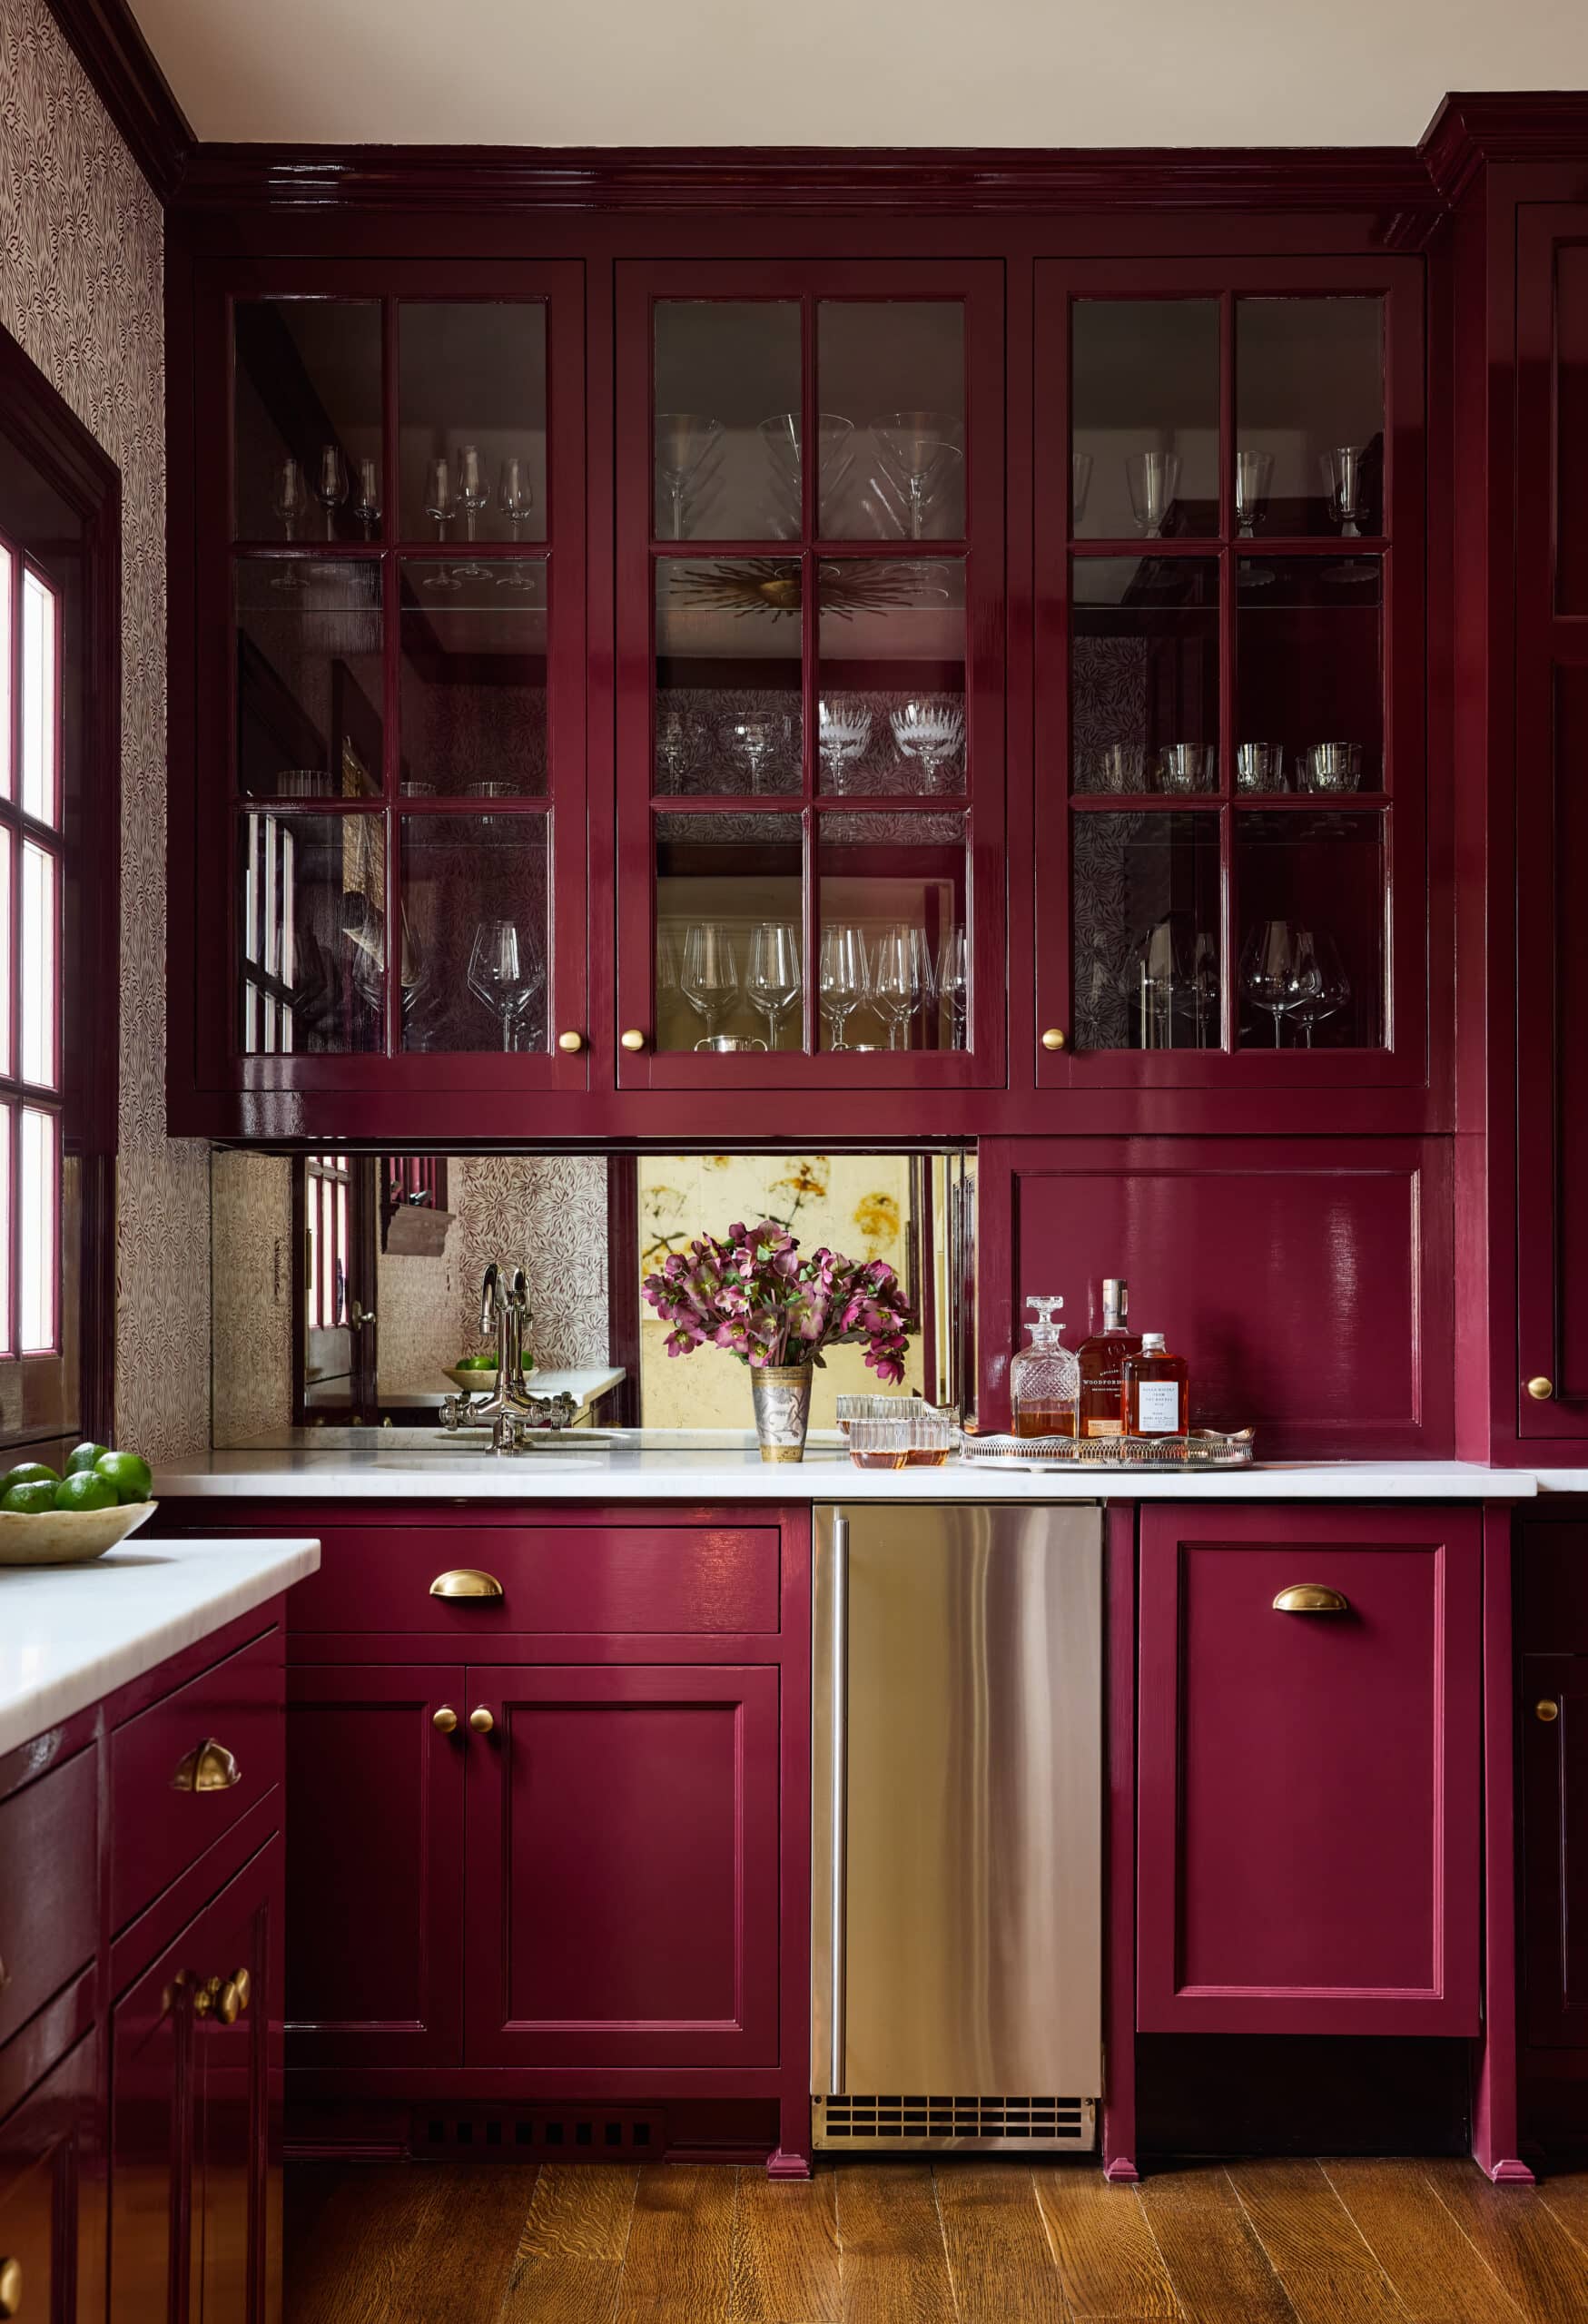 McGrath 2 burgundy red kitchen cabinets